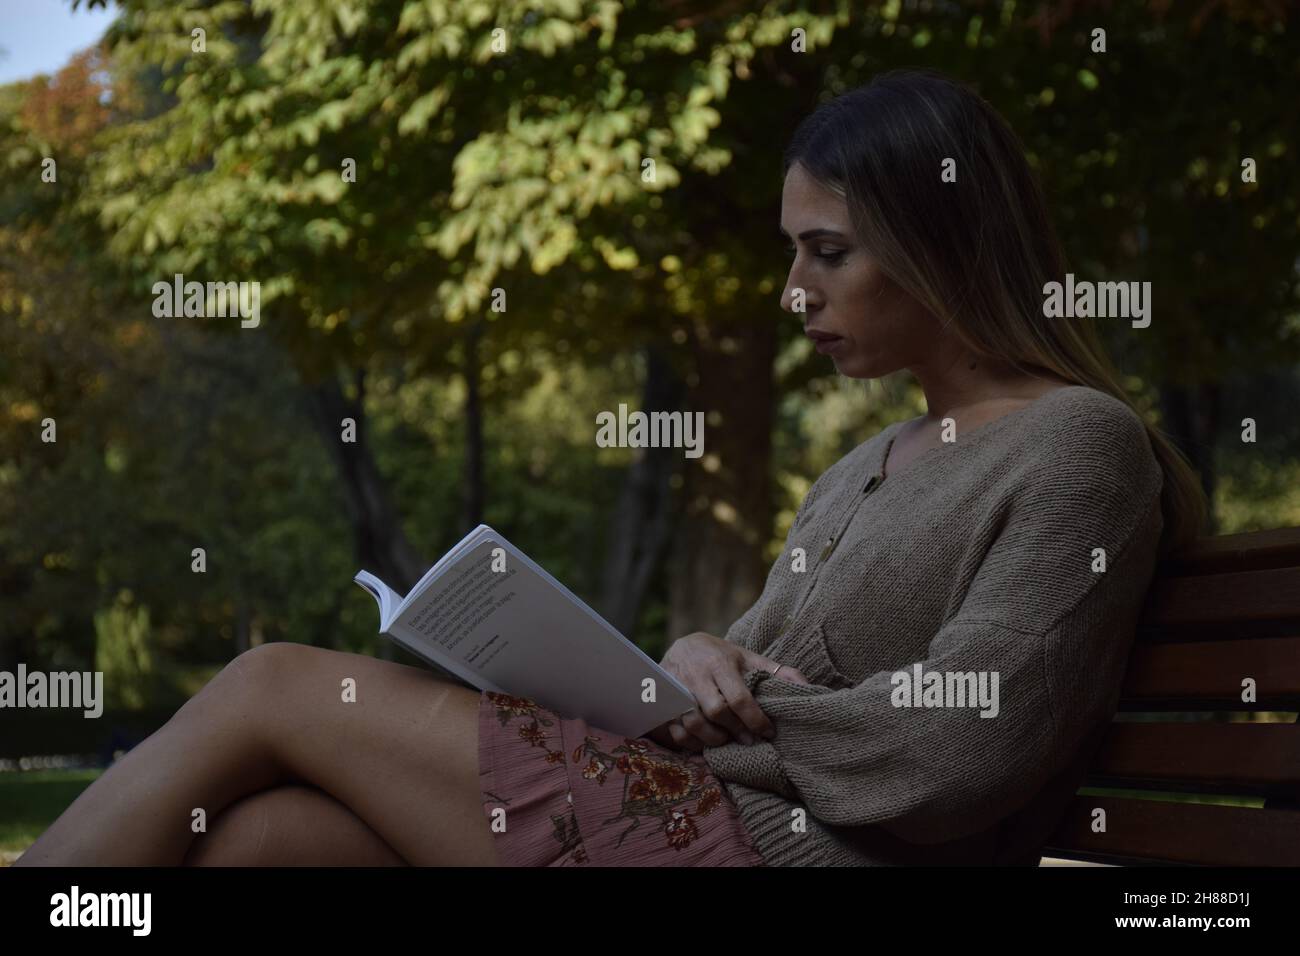 Frau, die während eines sonnigen Tages ein Buch in einem Park liest, schaut auf eine Kamera, schaut auf ein Buch, sitzt auf einer Bank, an einem Winter-, Sommertag Stockfoto